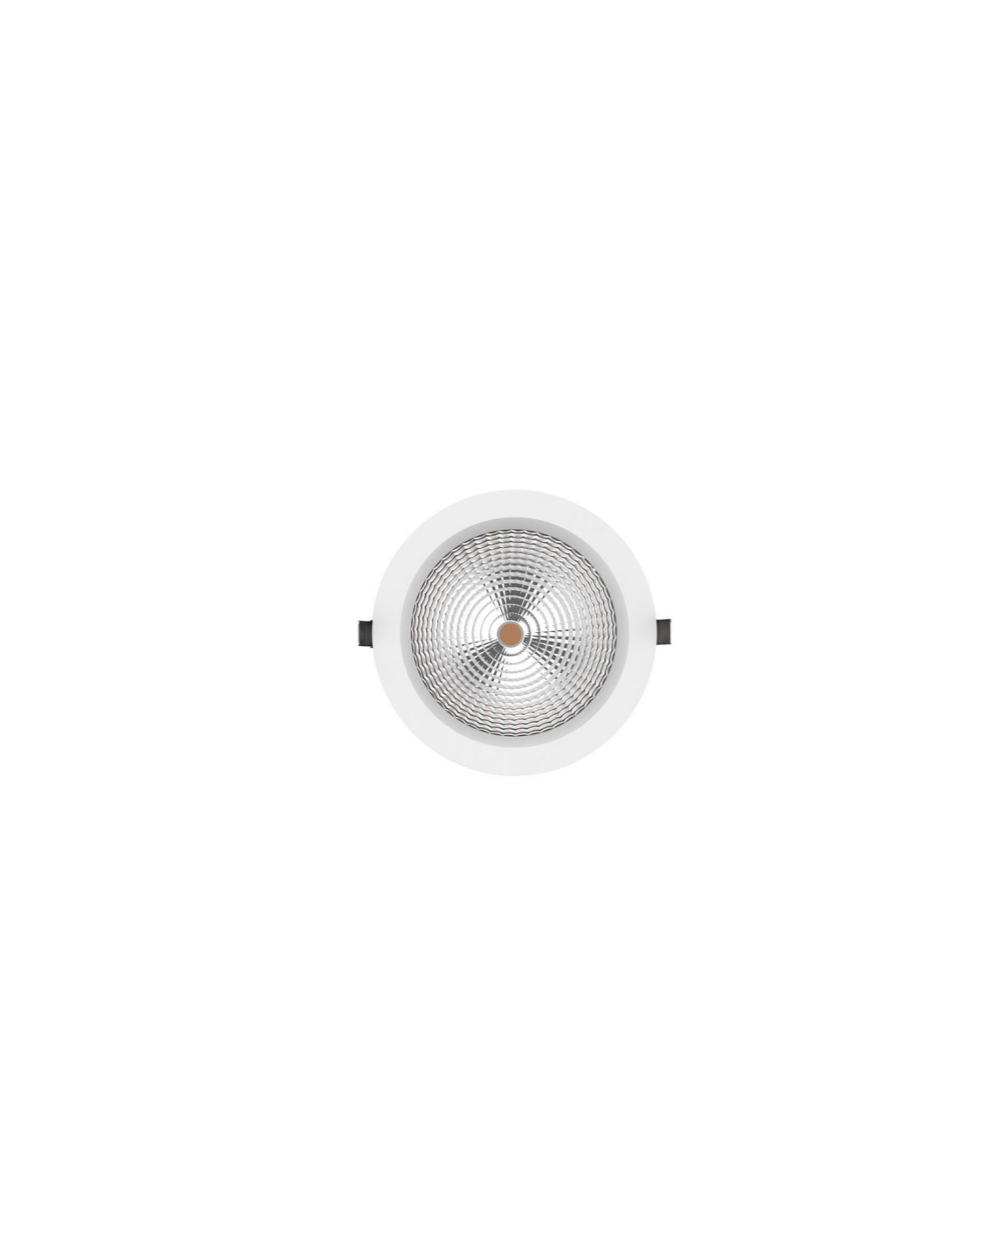 Lampa sufitowa M-HIDE 42W WP IP54 - Mistic Lighting oprawa wpuszczana okrągła typu downlight do zabudowy w sufitach biała    